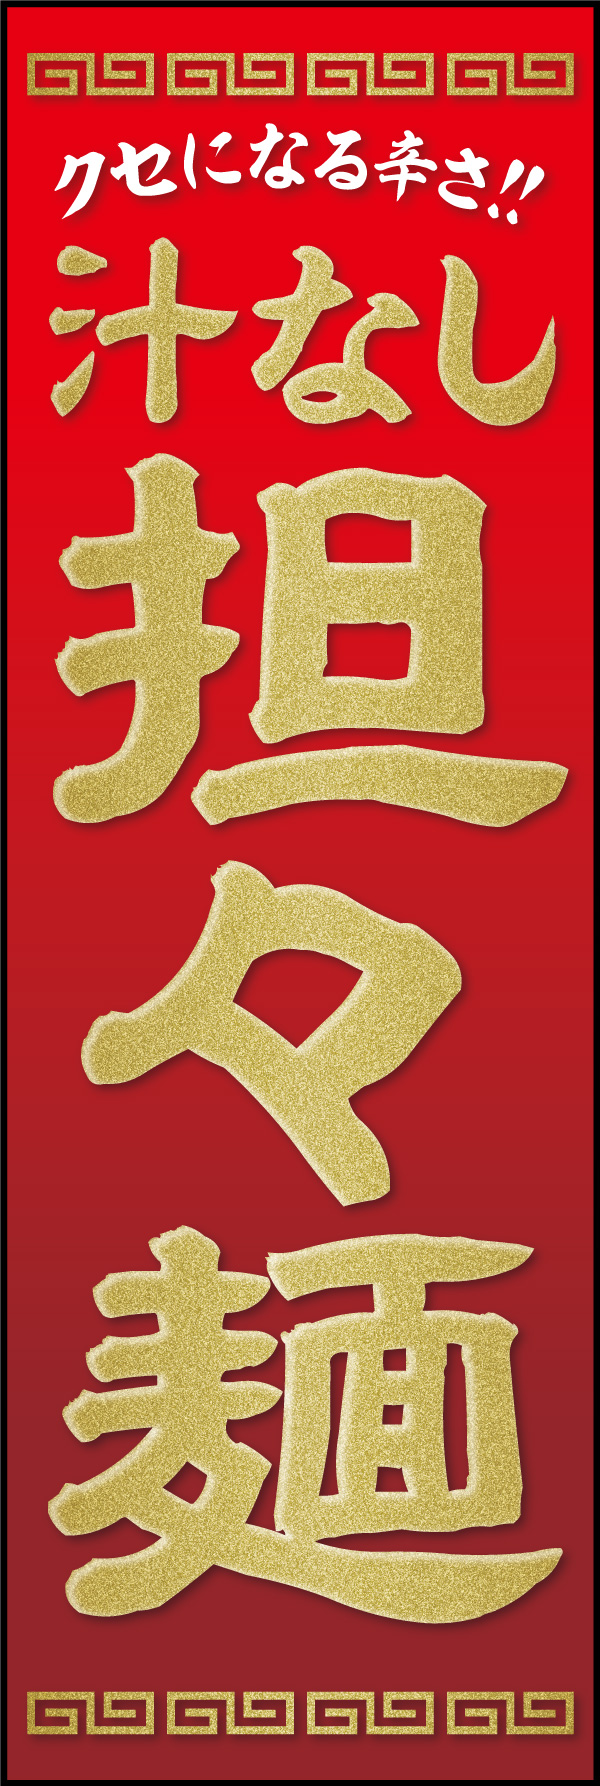 担々麺 07 「汁なし担々麺」ののぼりです。痺れる辛さのイメージで赤をベースに、品のある中華料理店の雰囲気でデザインしました。(Y.M)